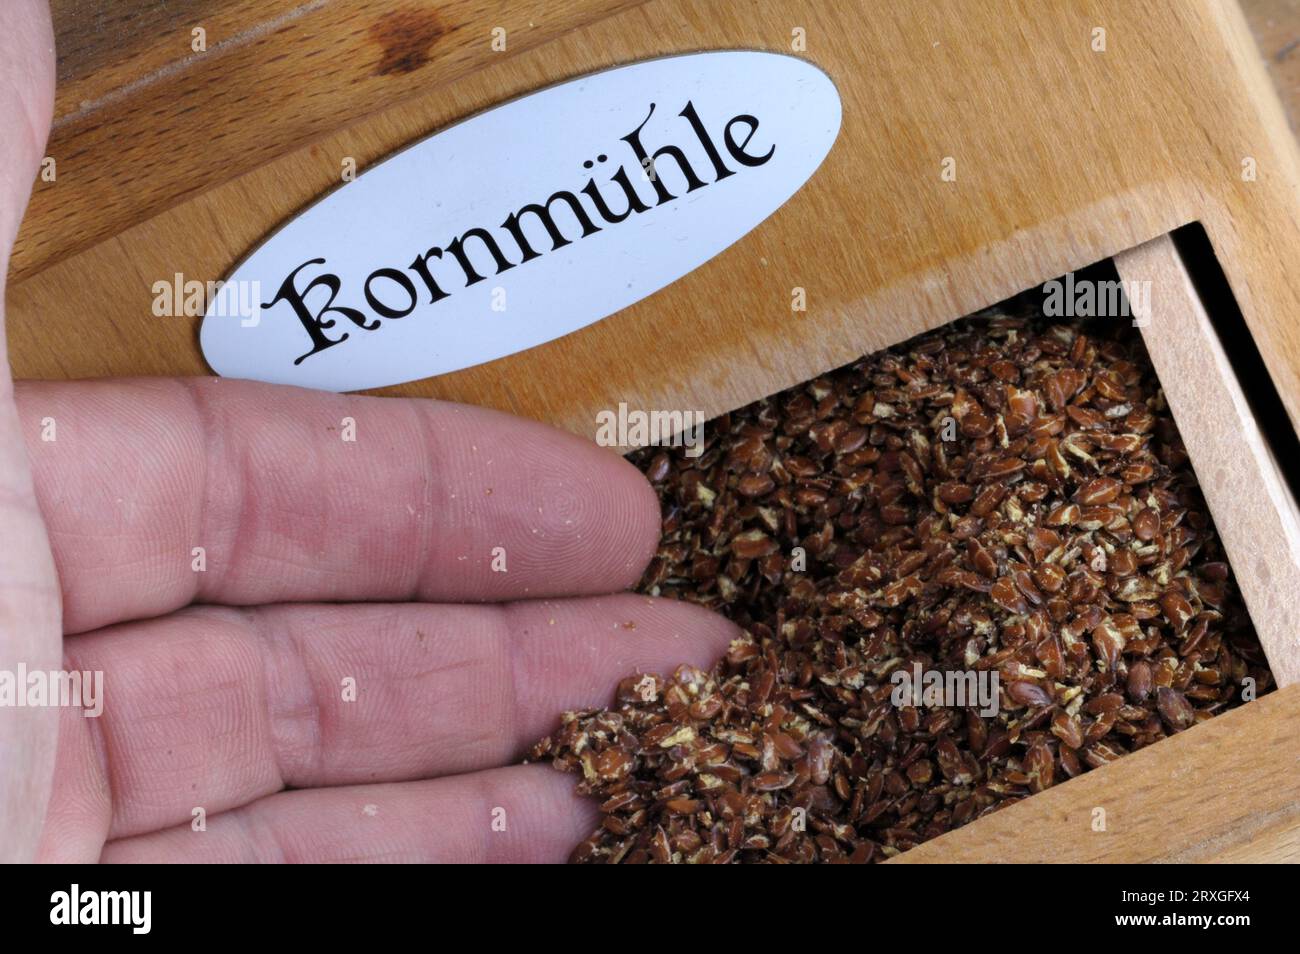 Lin commun, graines de lin dans le moulin à main (Linum usitatissimum), graines de lin dans le moulin à main, lin, graines de lin, moulin à main Banque D'Images